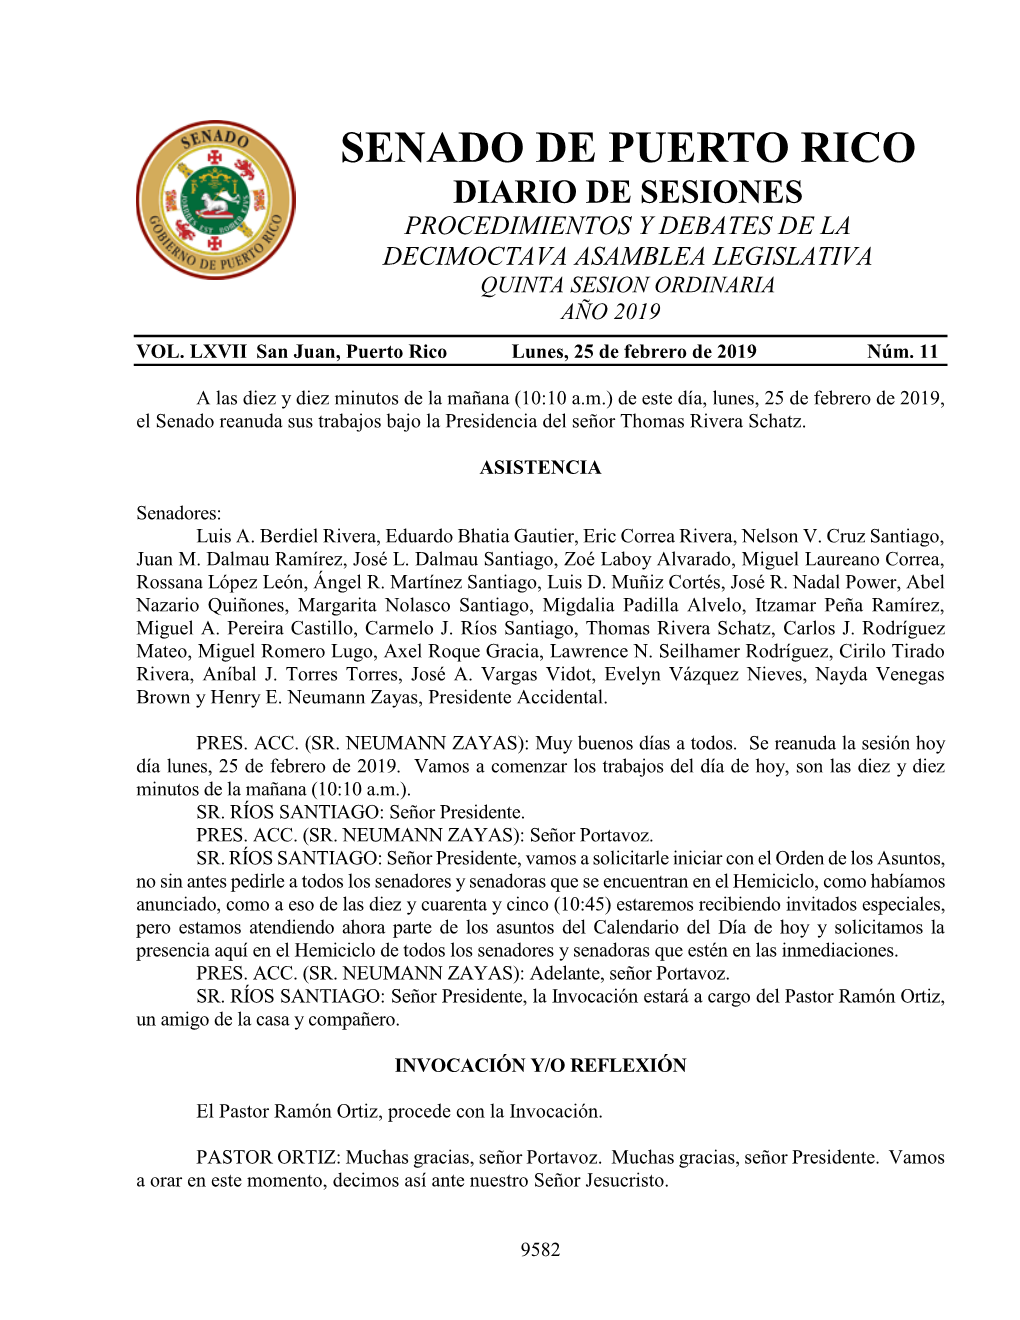 Senado De Puerto Rico Diario De Sesiones Procedimientos Y Debates De La Decimoctava Asamblea Legislativa Quinta Sesion Ordinaria Año 2019 Vol